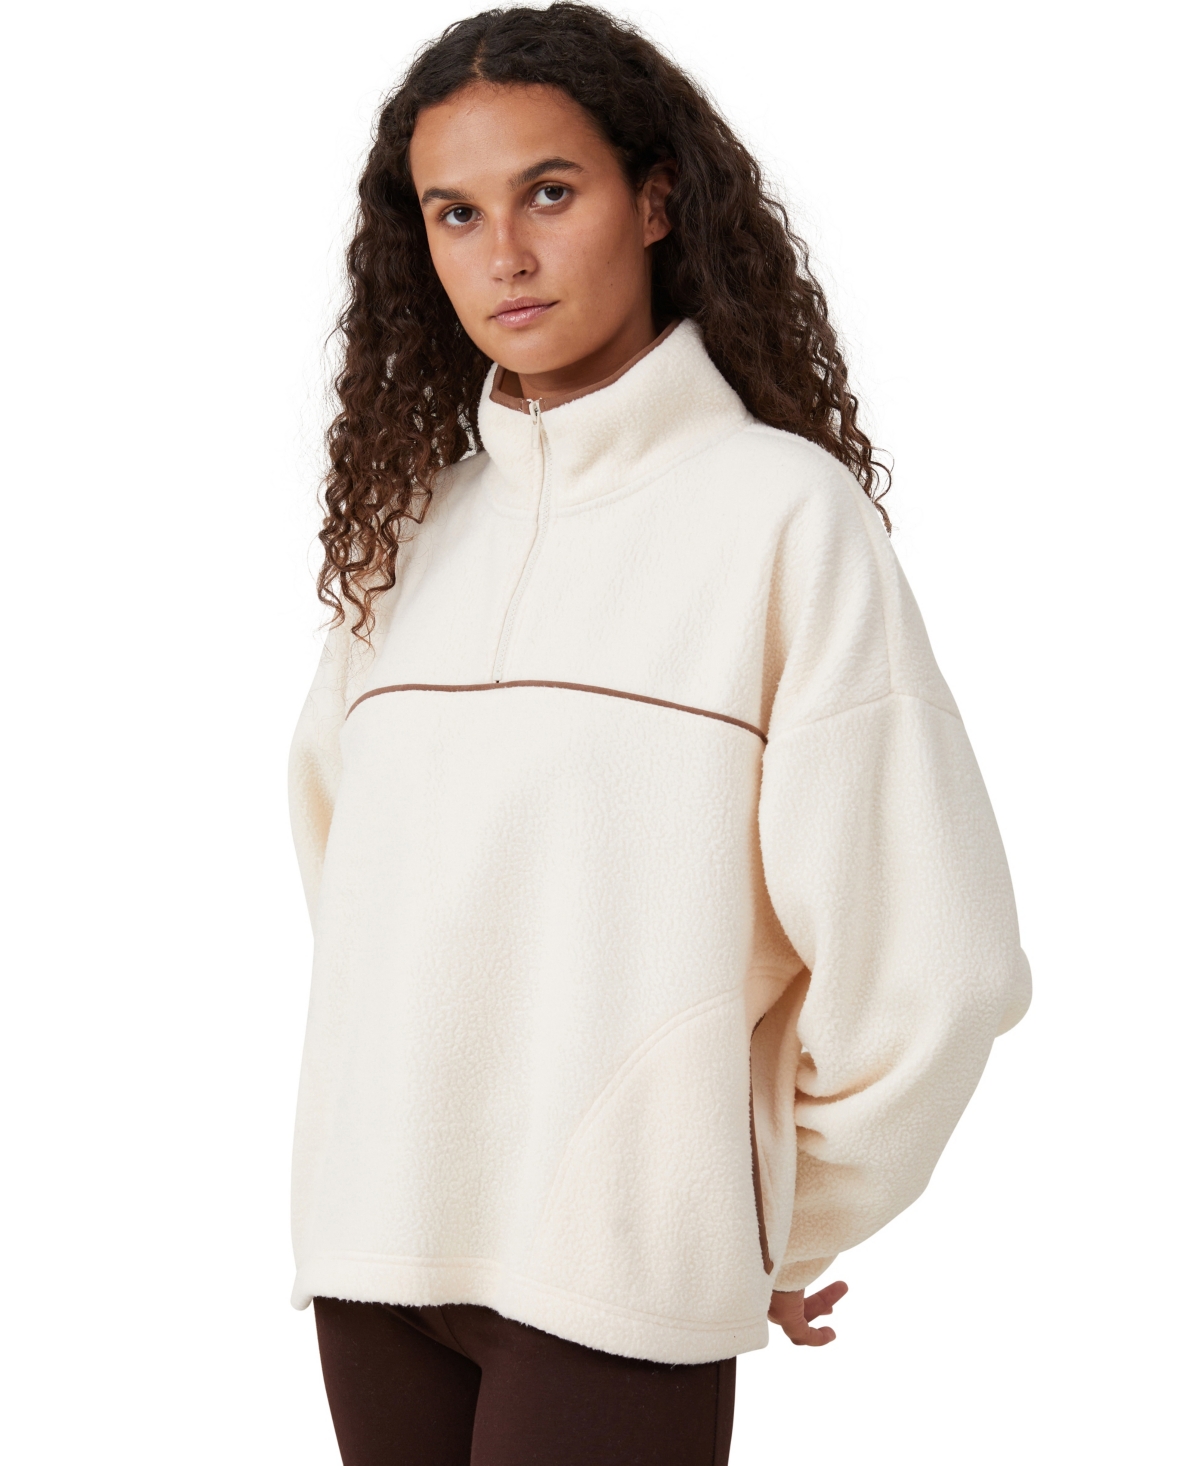 Women's Teddy Fleece Quarter Zip Sweater - Leaf Brown